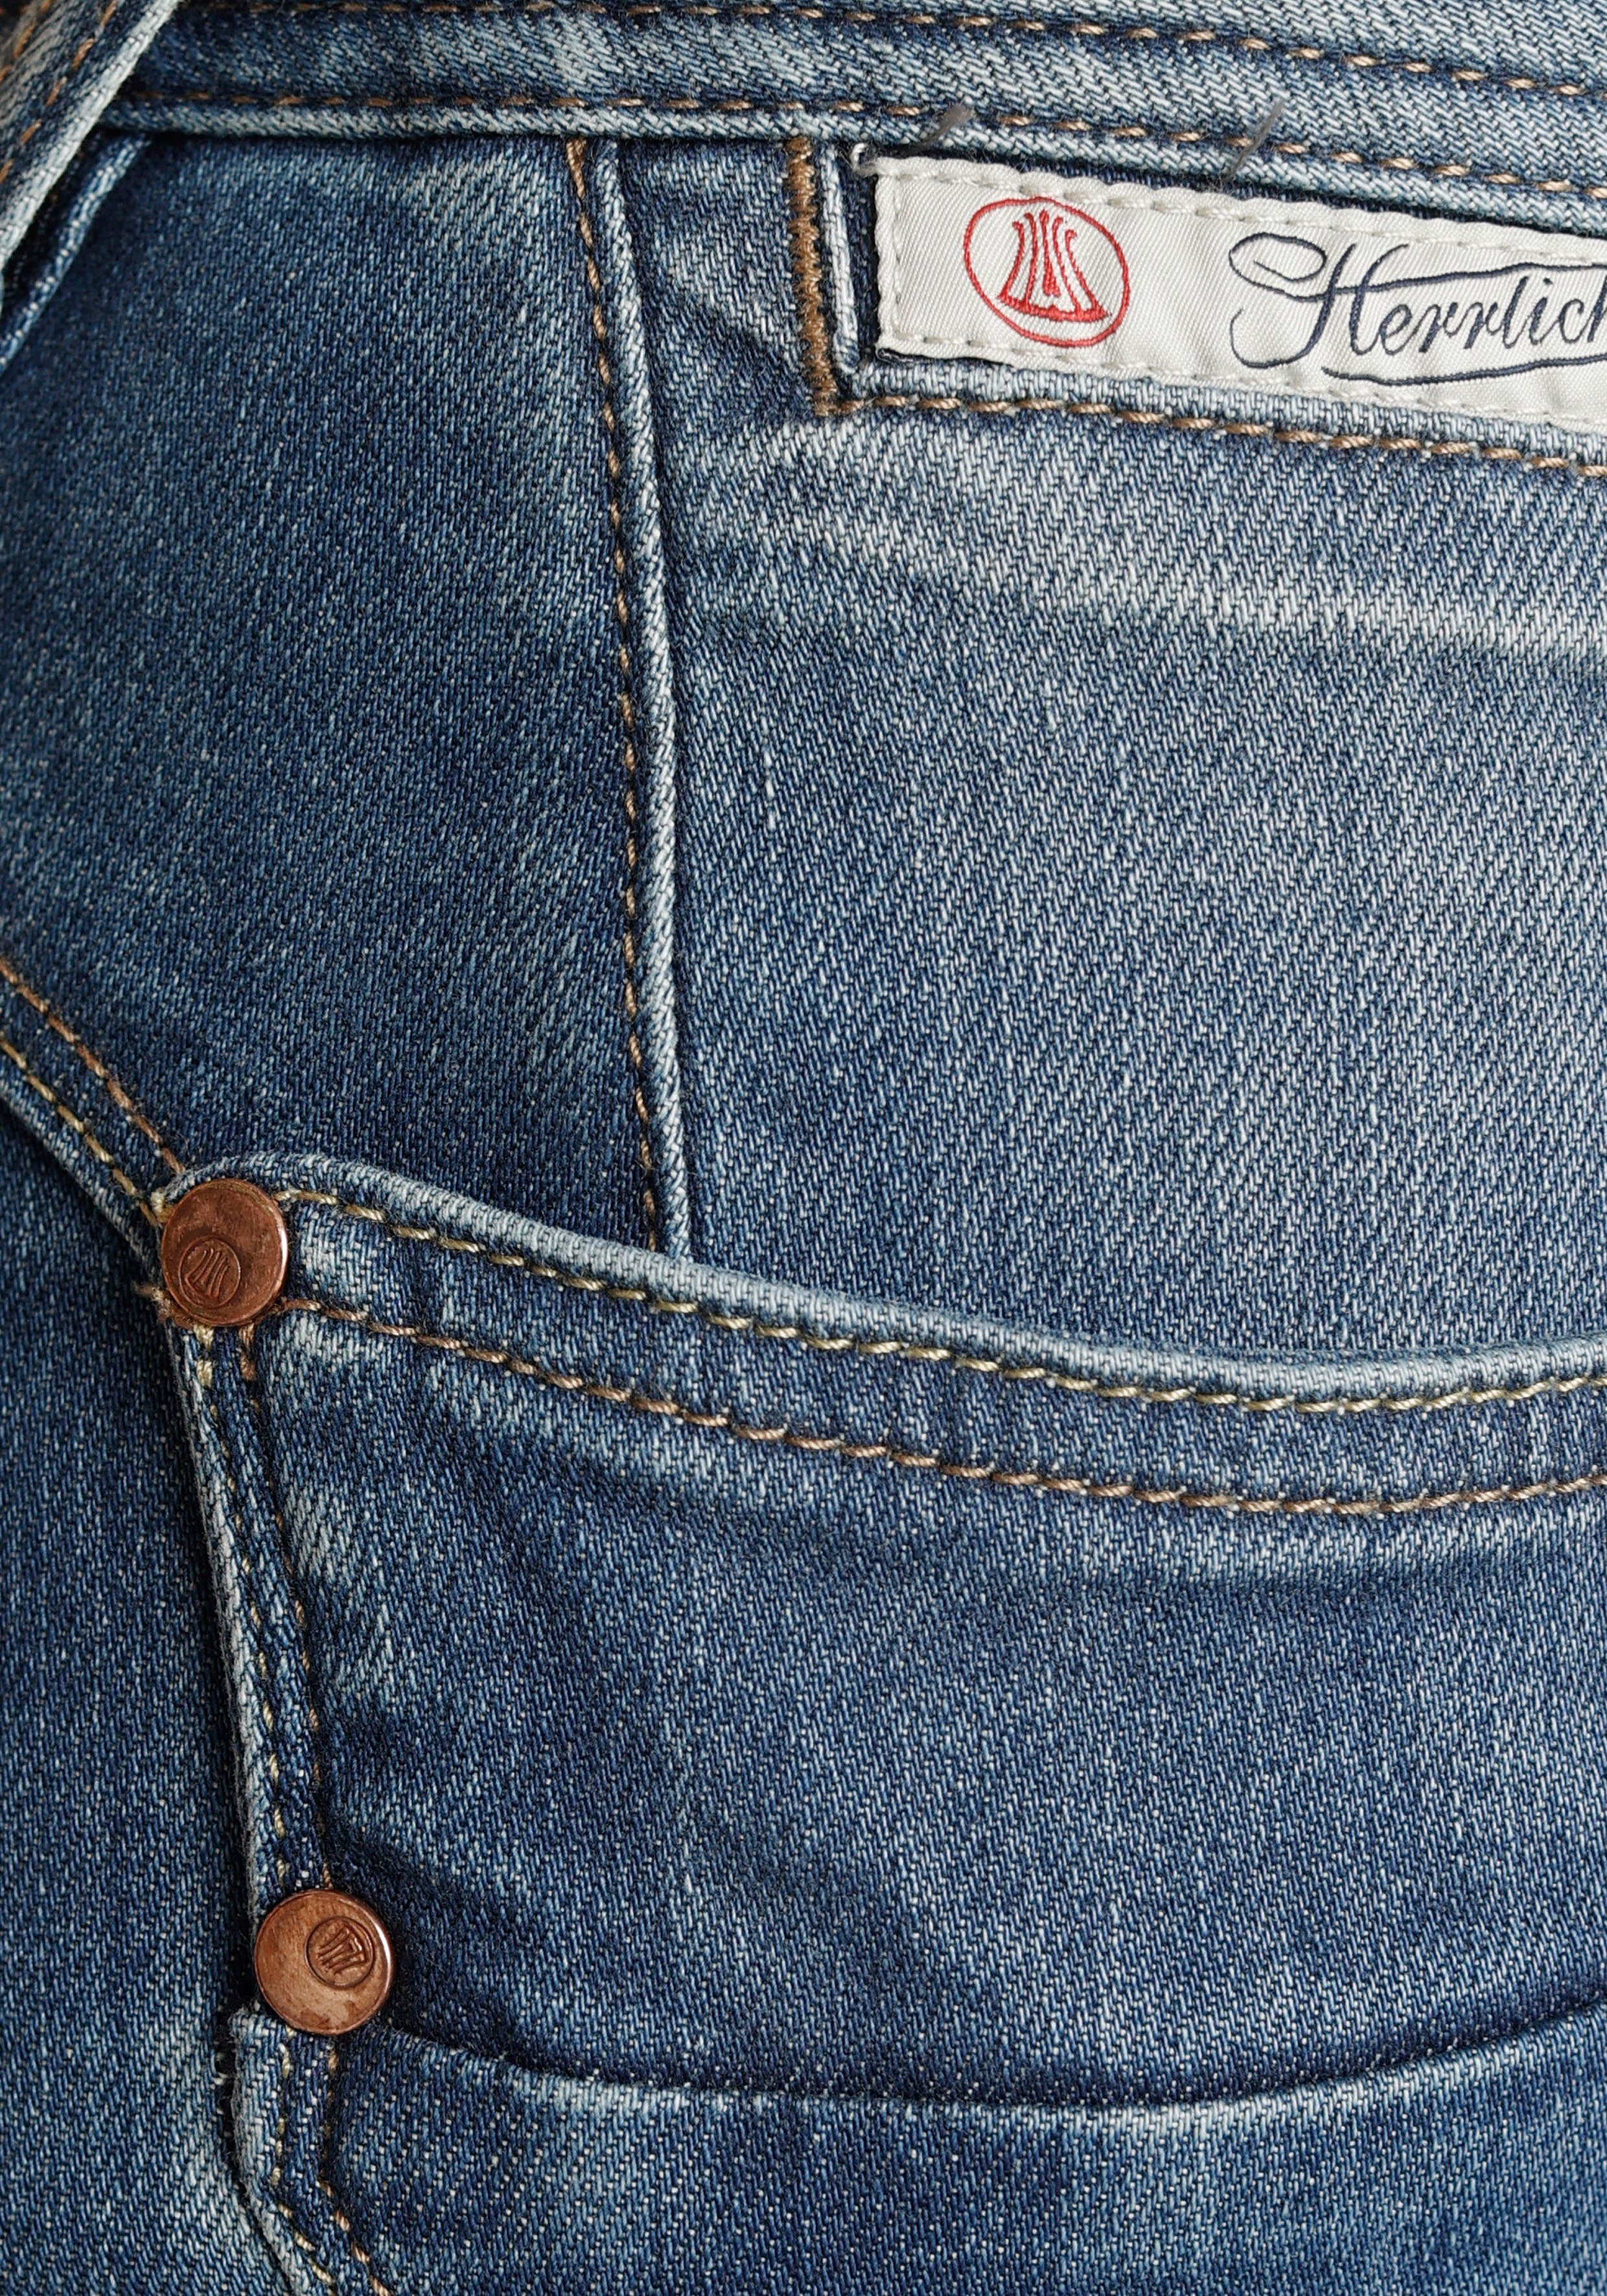 Herrlicher Slim-fit-Jeans PIPER SLIM ORGANIC Technology Kitotex umweltfreundlich dank